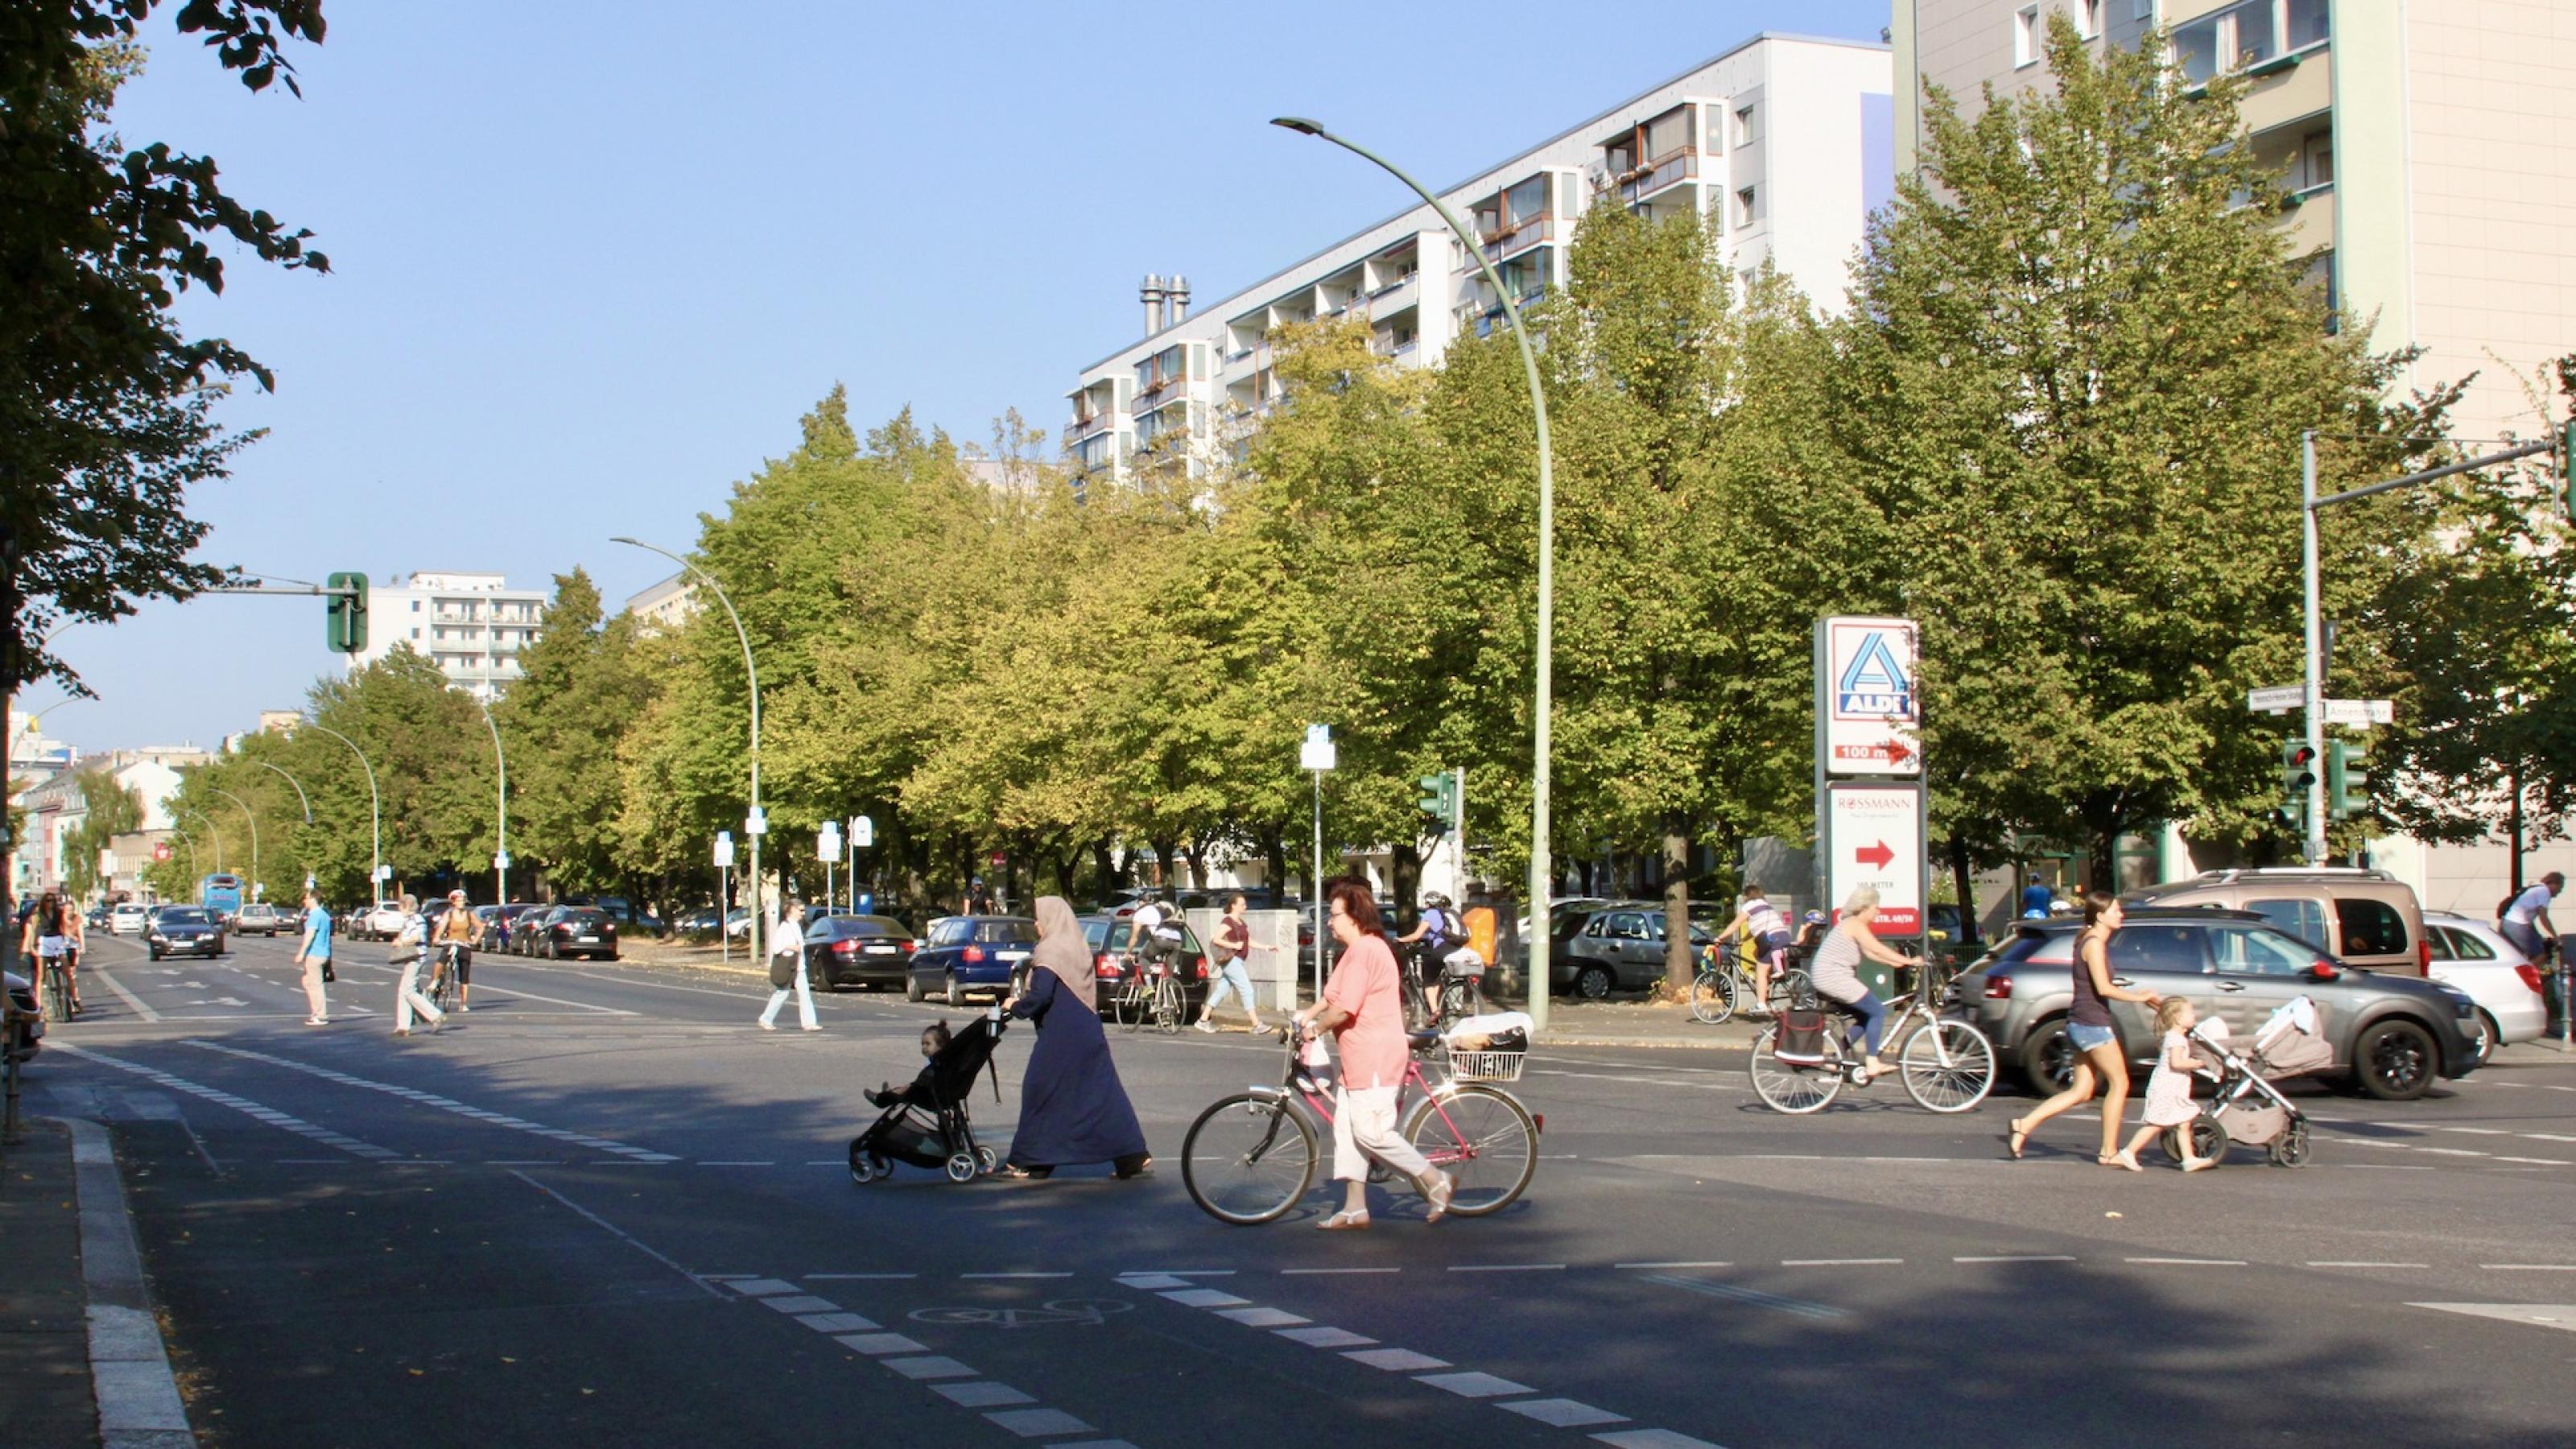 Eine breite Kreuzung in Berlin im Spätsommer. Die Sonne scheint. Zwei Frauen schieben Kinder in entgegengesetzter Richtung über die Ampel, eine weitere Frau schiebt ihr Fahrrad über die Kreuzung eine weitere fährt mit dem Rad im Hintergrund über die Kreuzung.